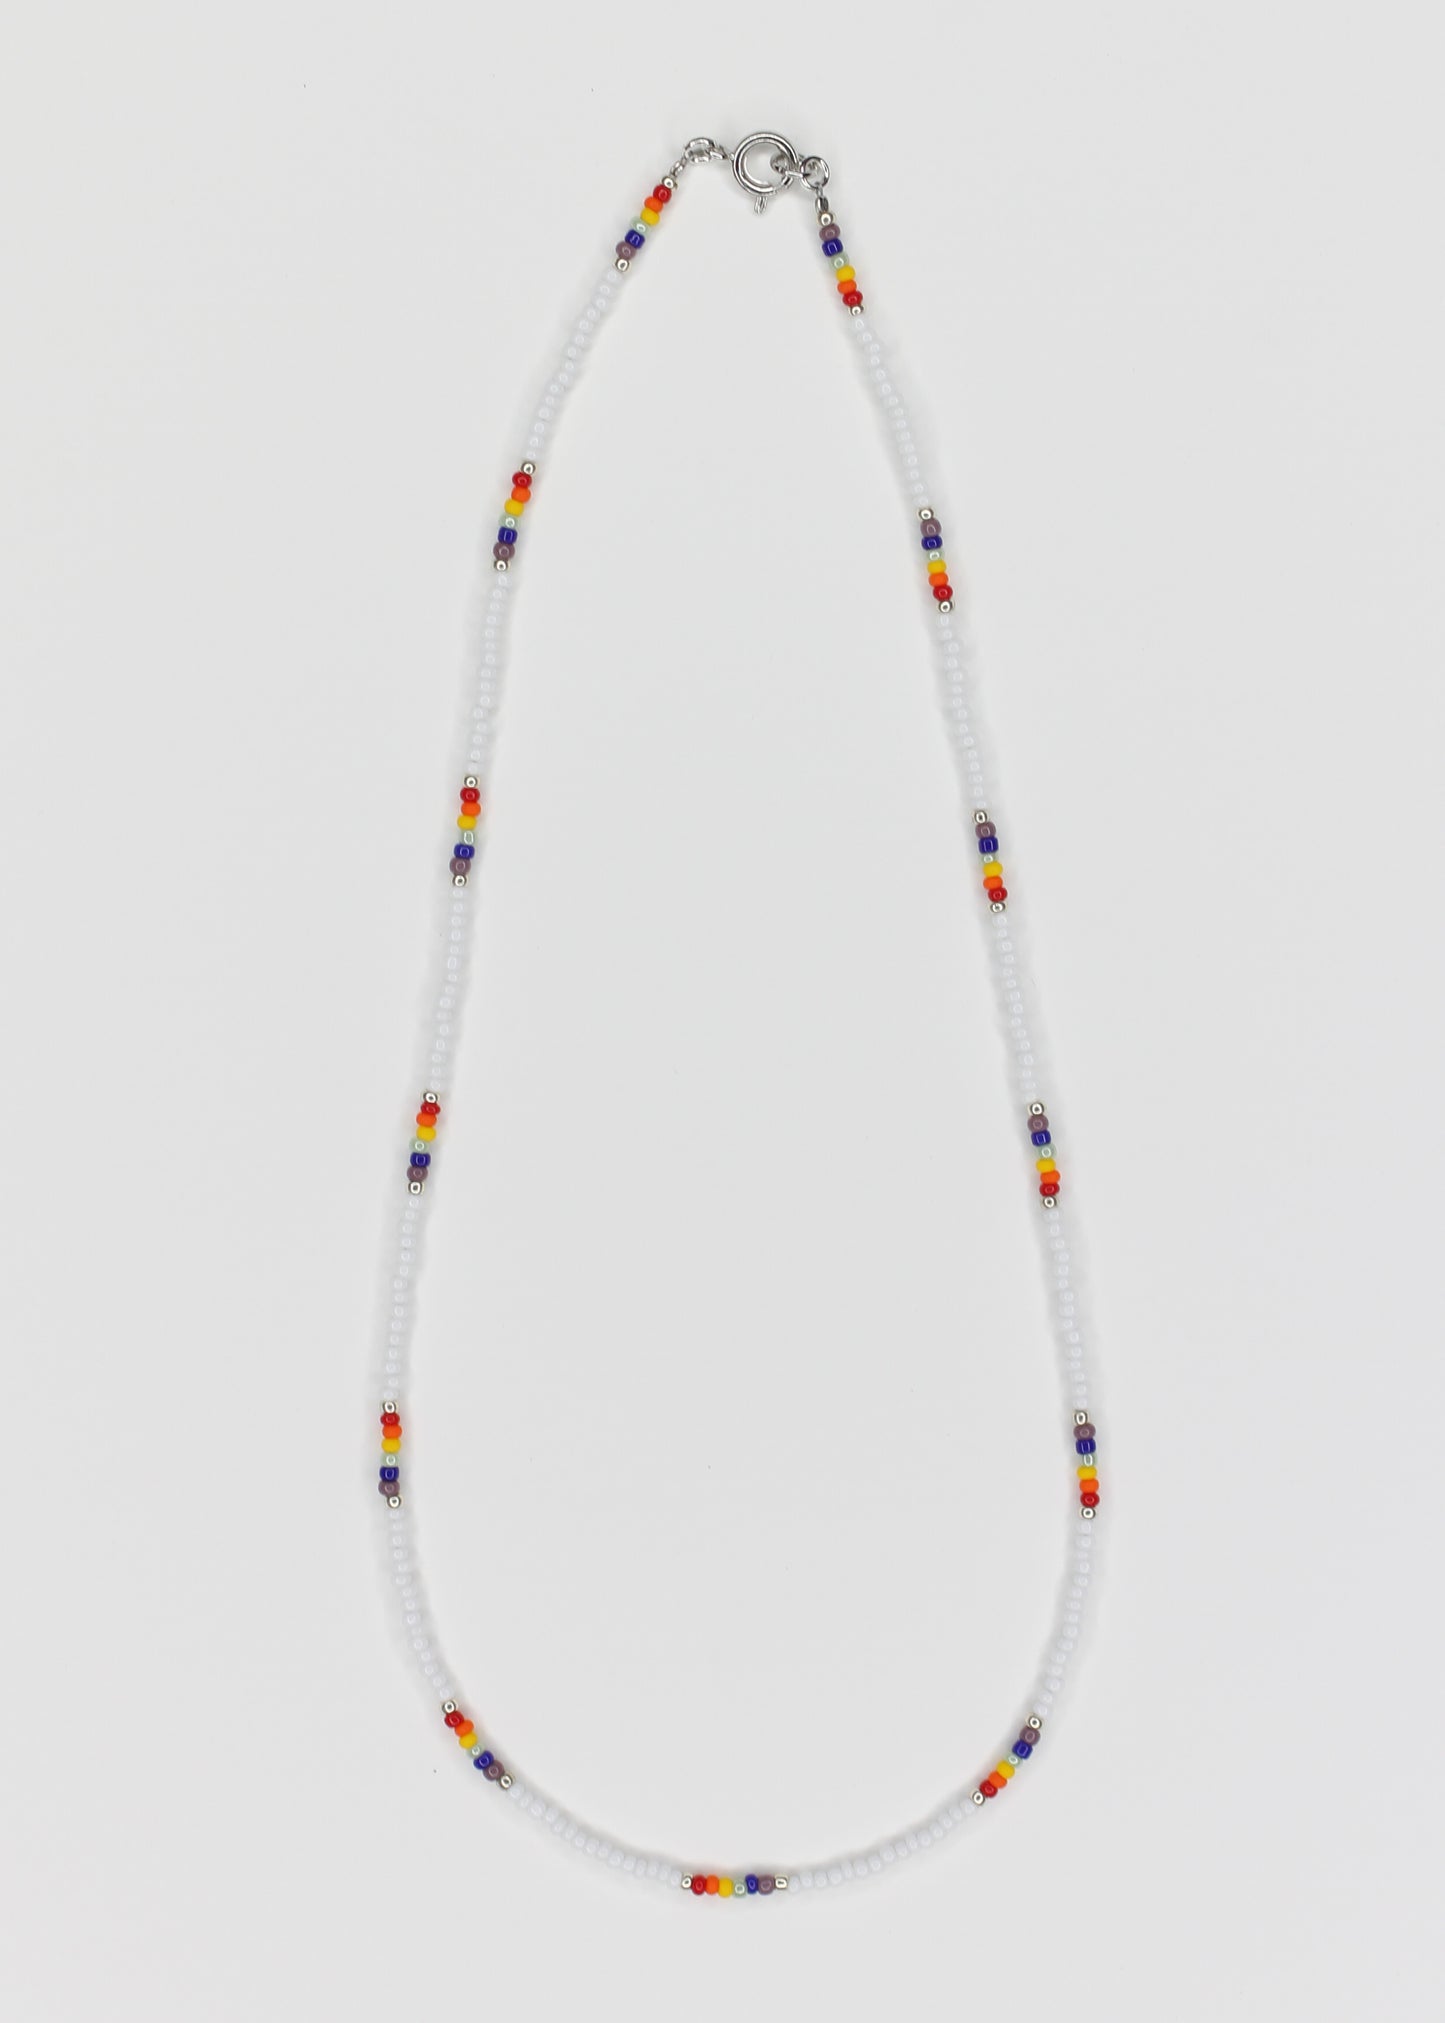 16" Minimalist Pride Seed Bead Necklace Multi Color Rainbow